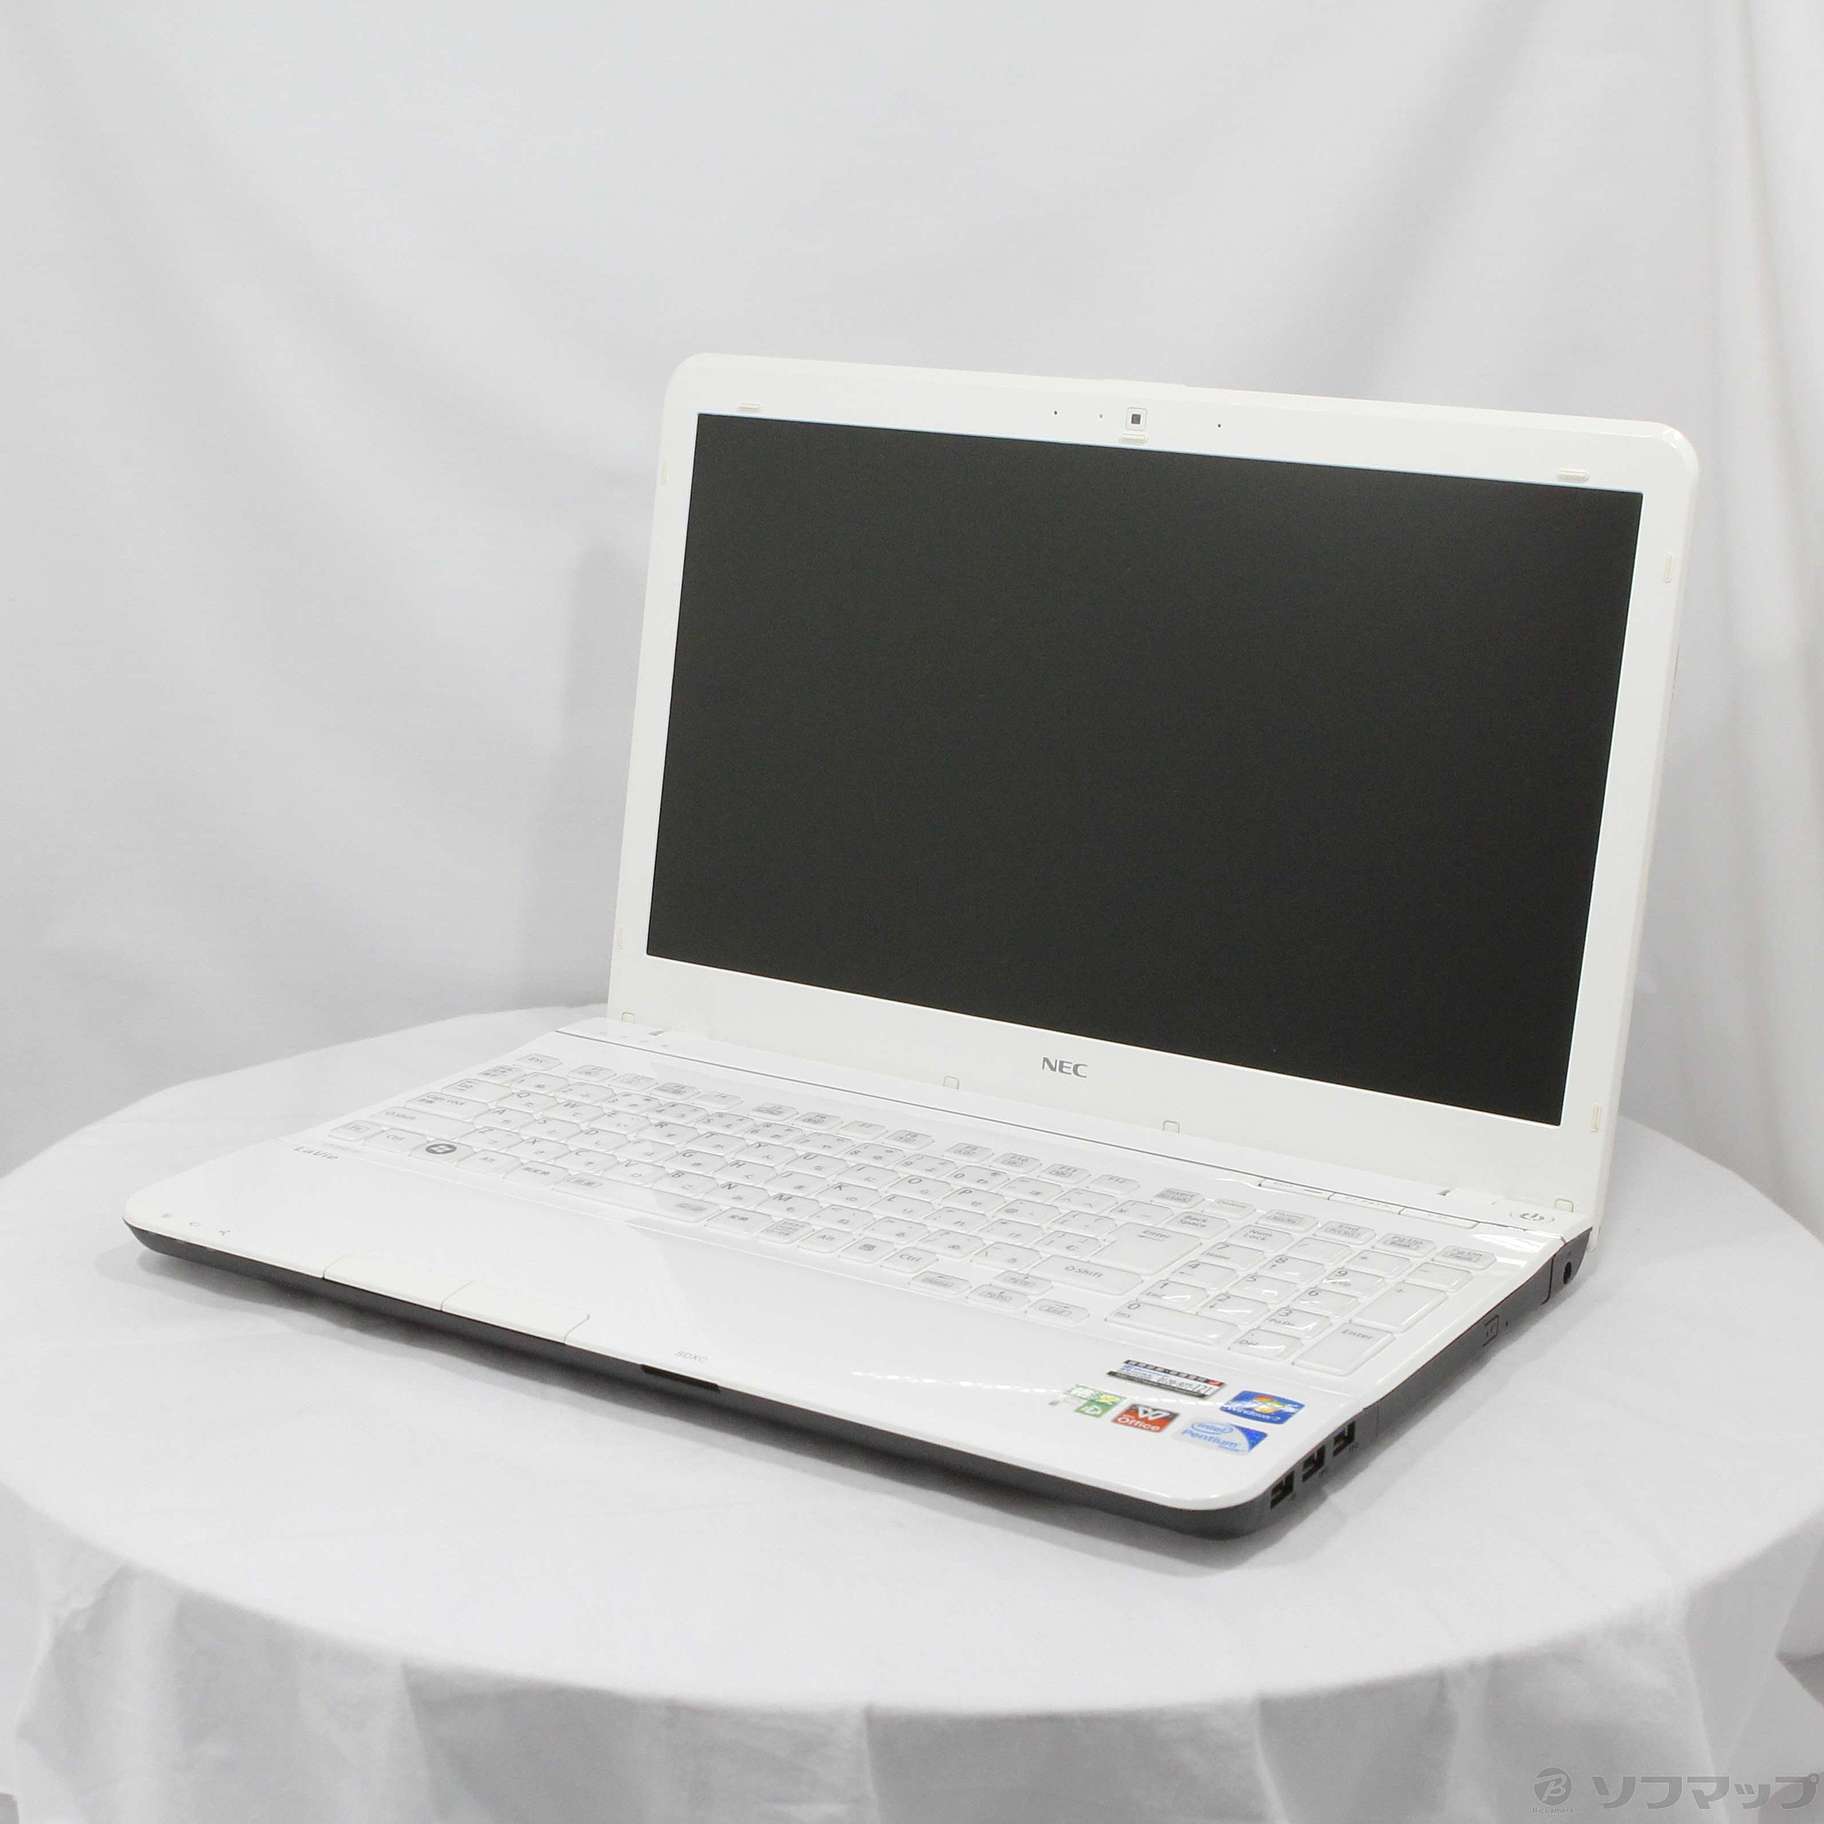 格安安心パソコン LaVie S PC-LS150HS1KSW クロスホワイト ※バッテリー完全消耗